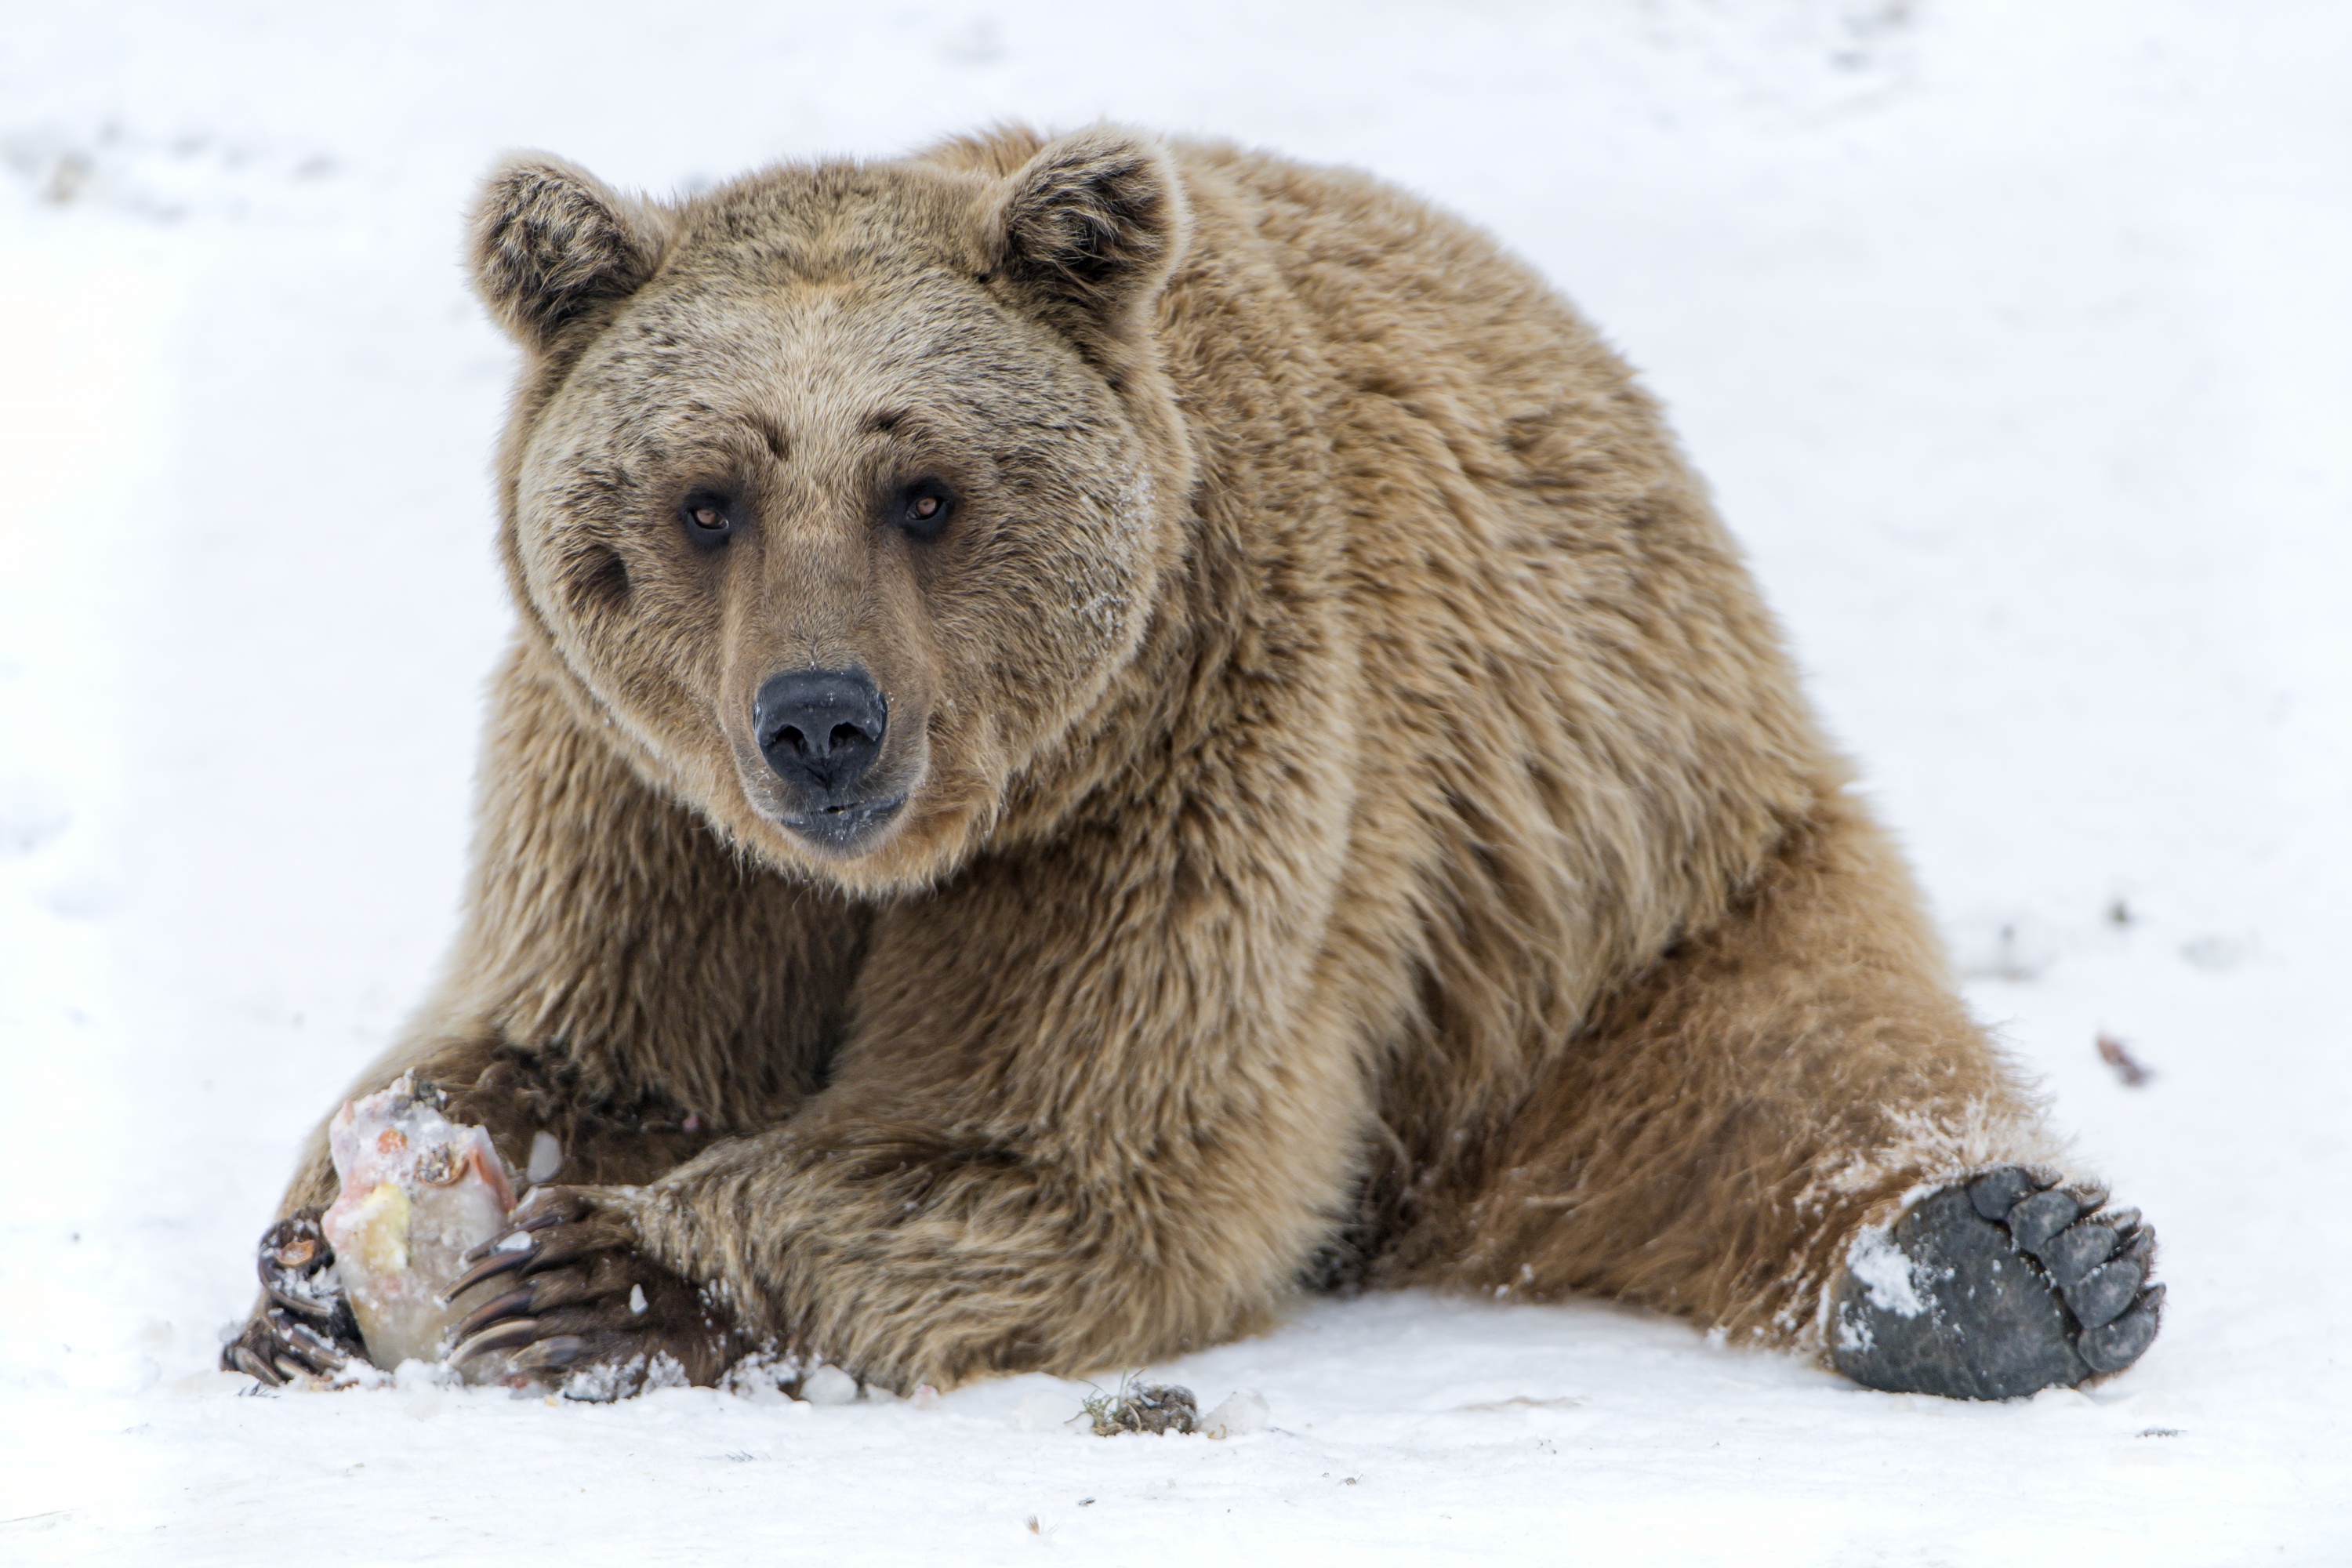 Скачать обои бесплатно Животные, Снег, Медведи, Медведь картинка на рабочий стол ПК